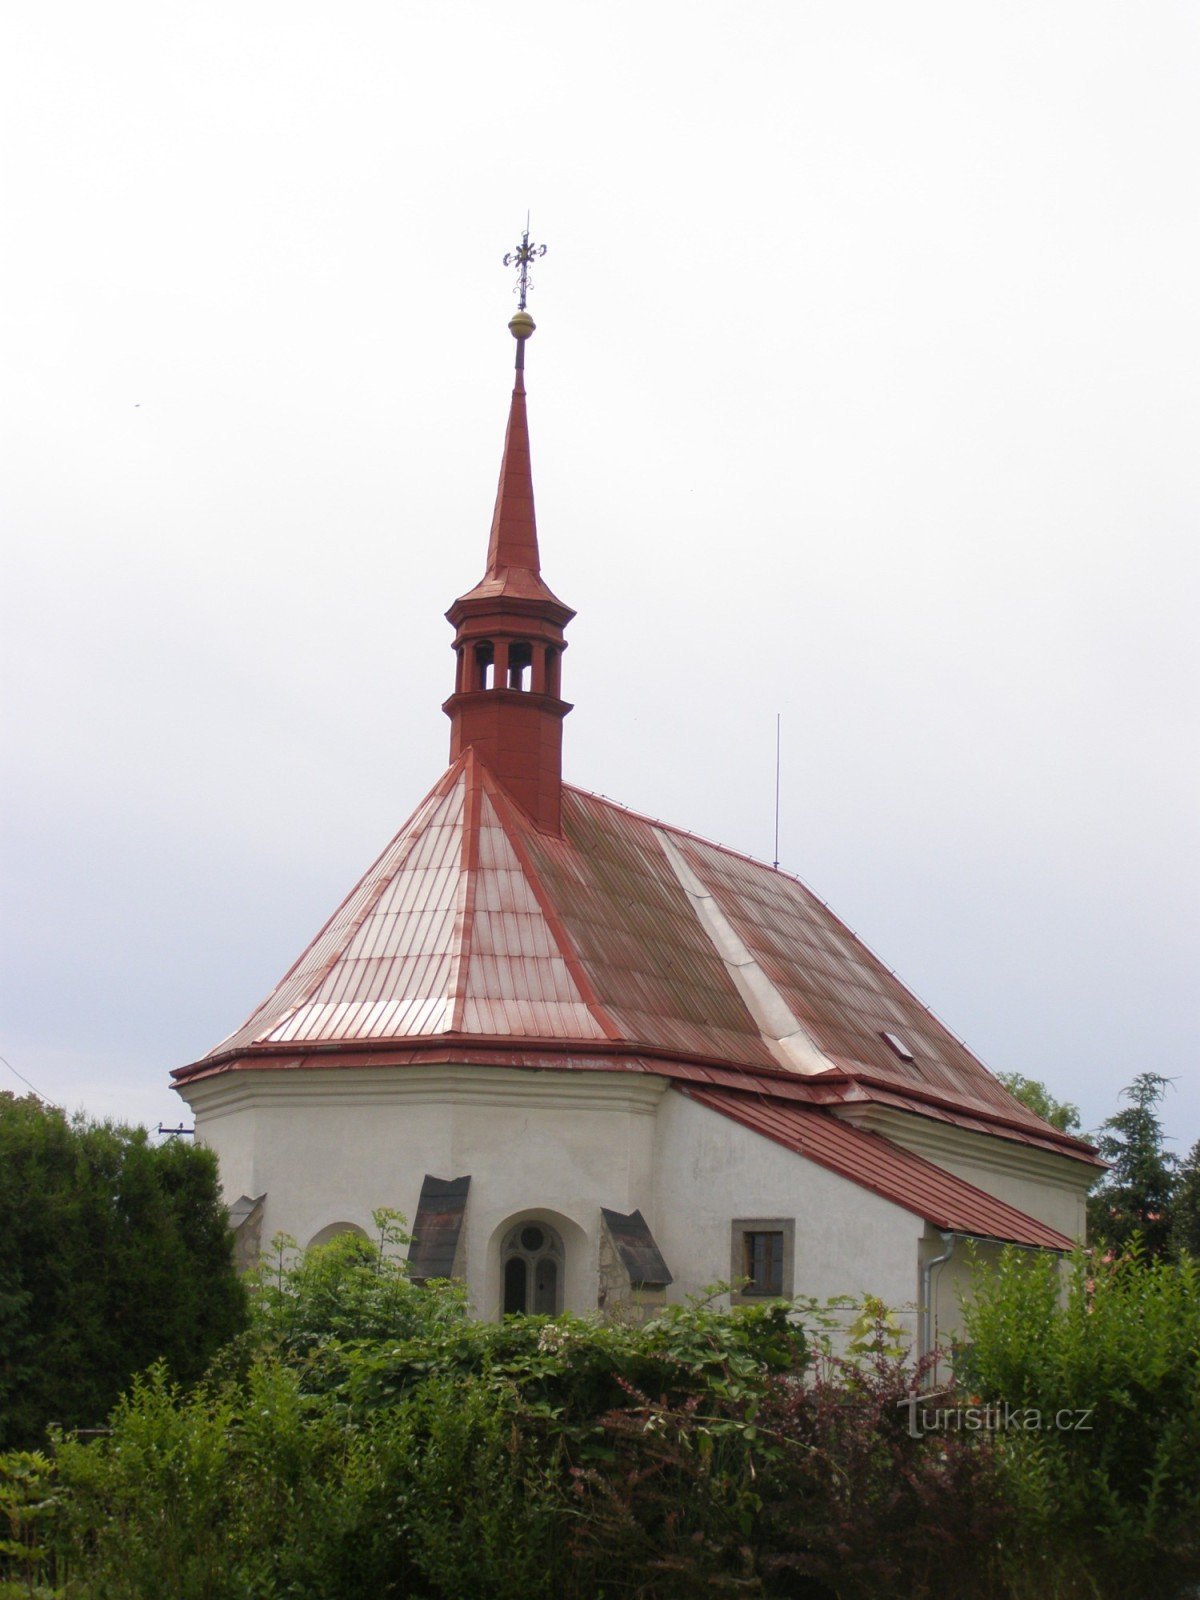 Mladějov - nhà thờ Thánh Giljí với tháp chuông